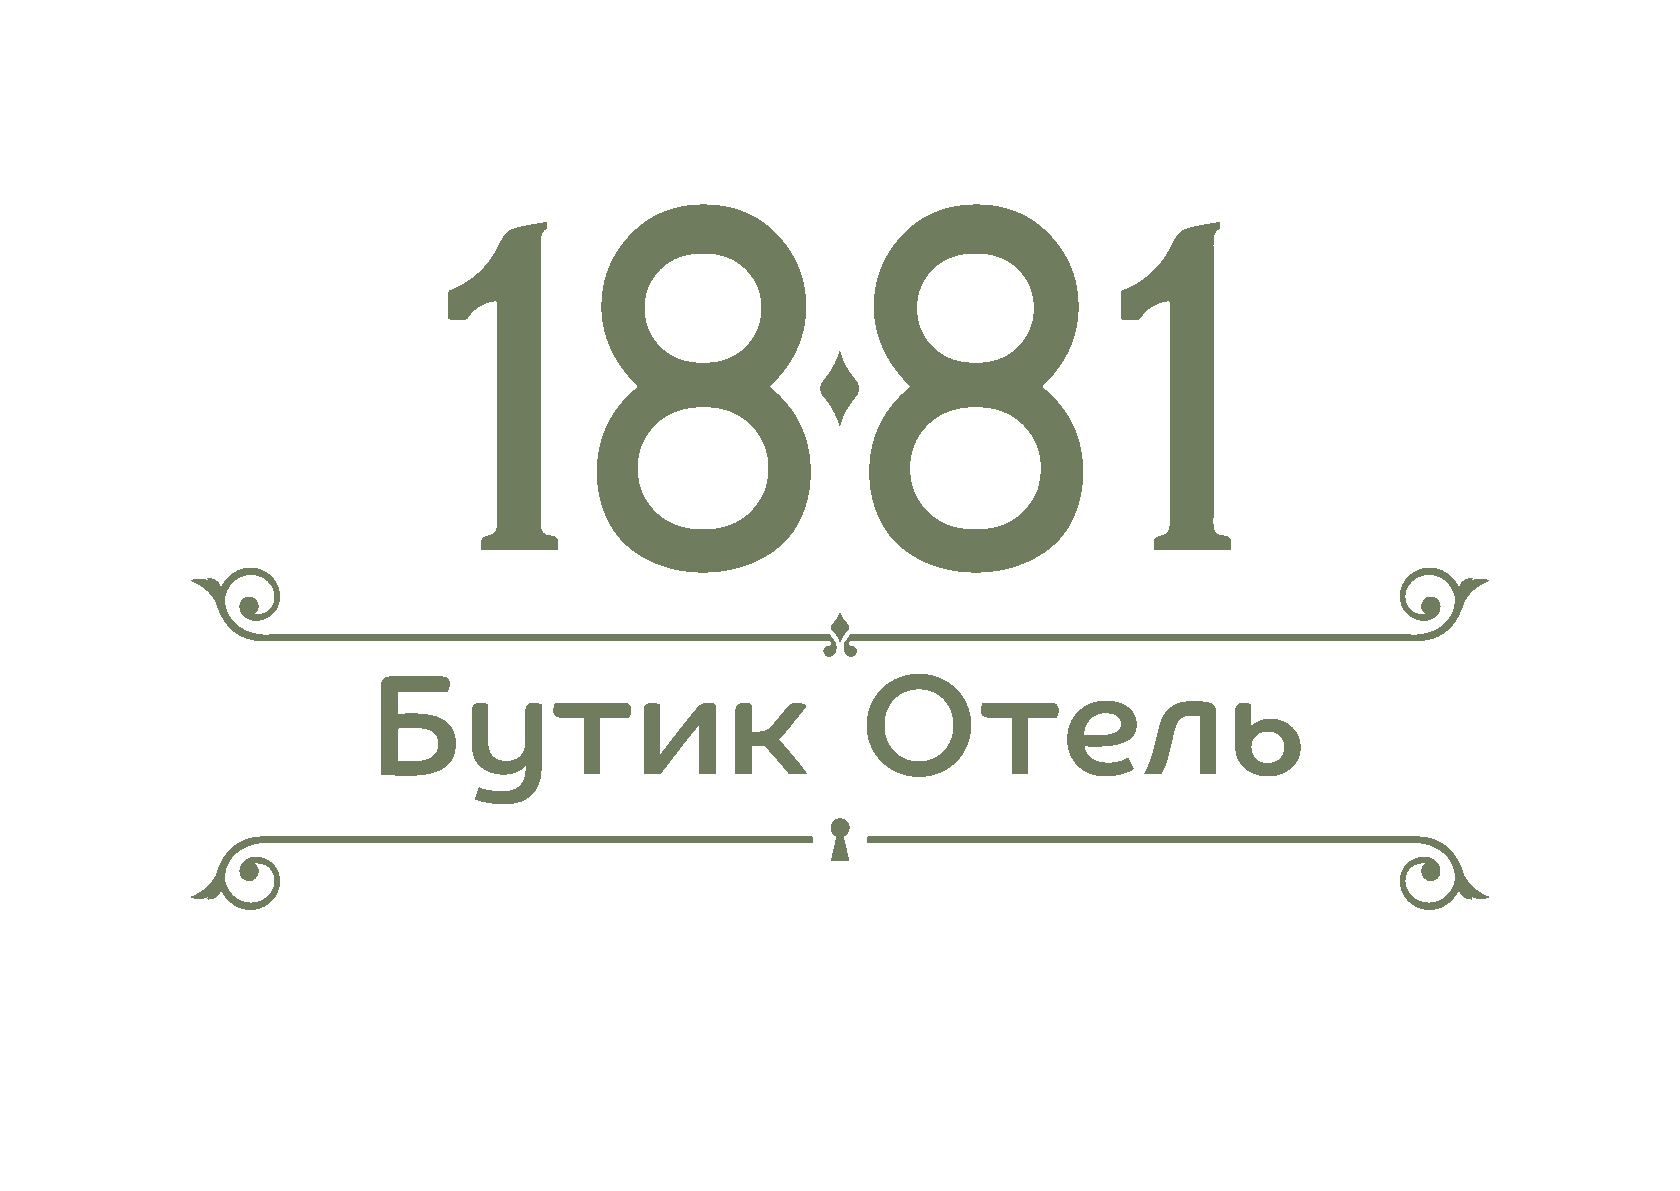 Бутик Отель 1881